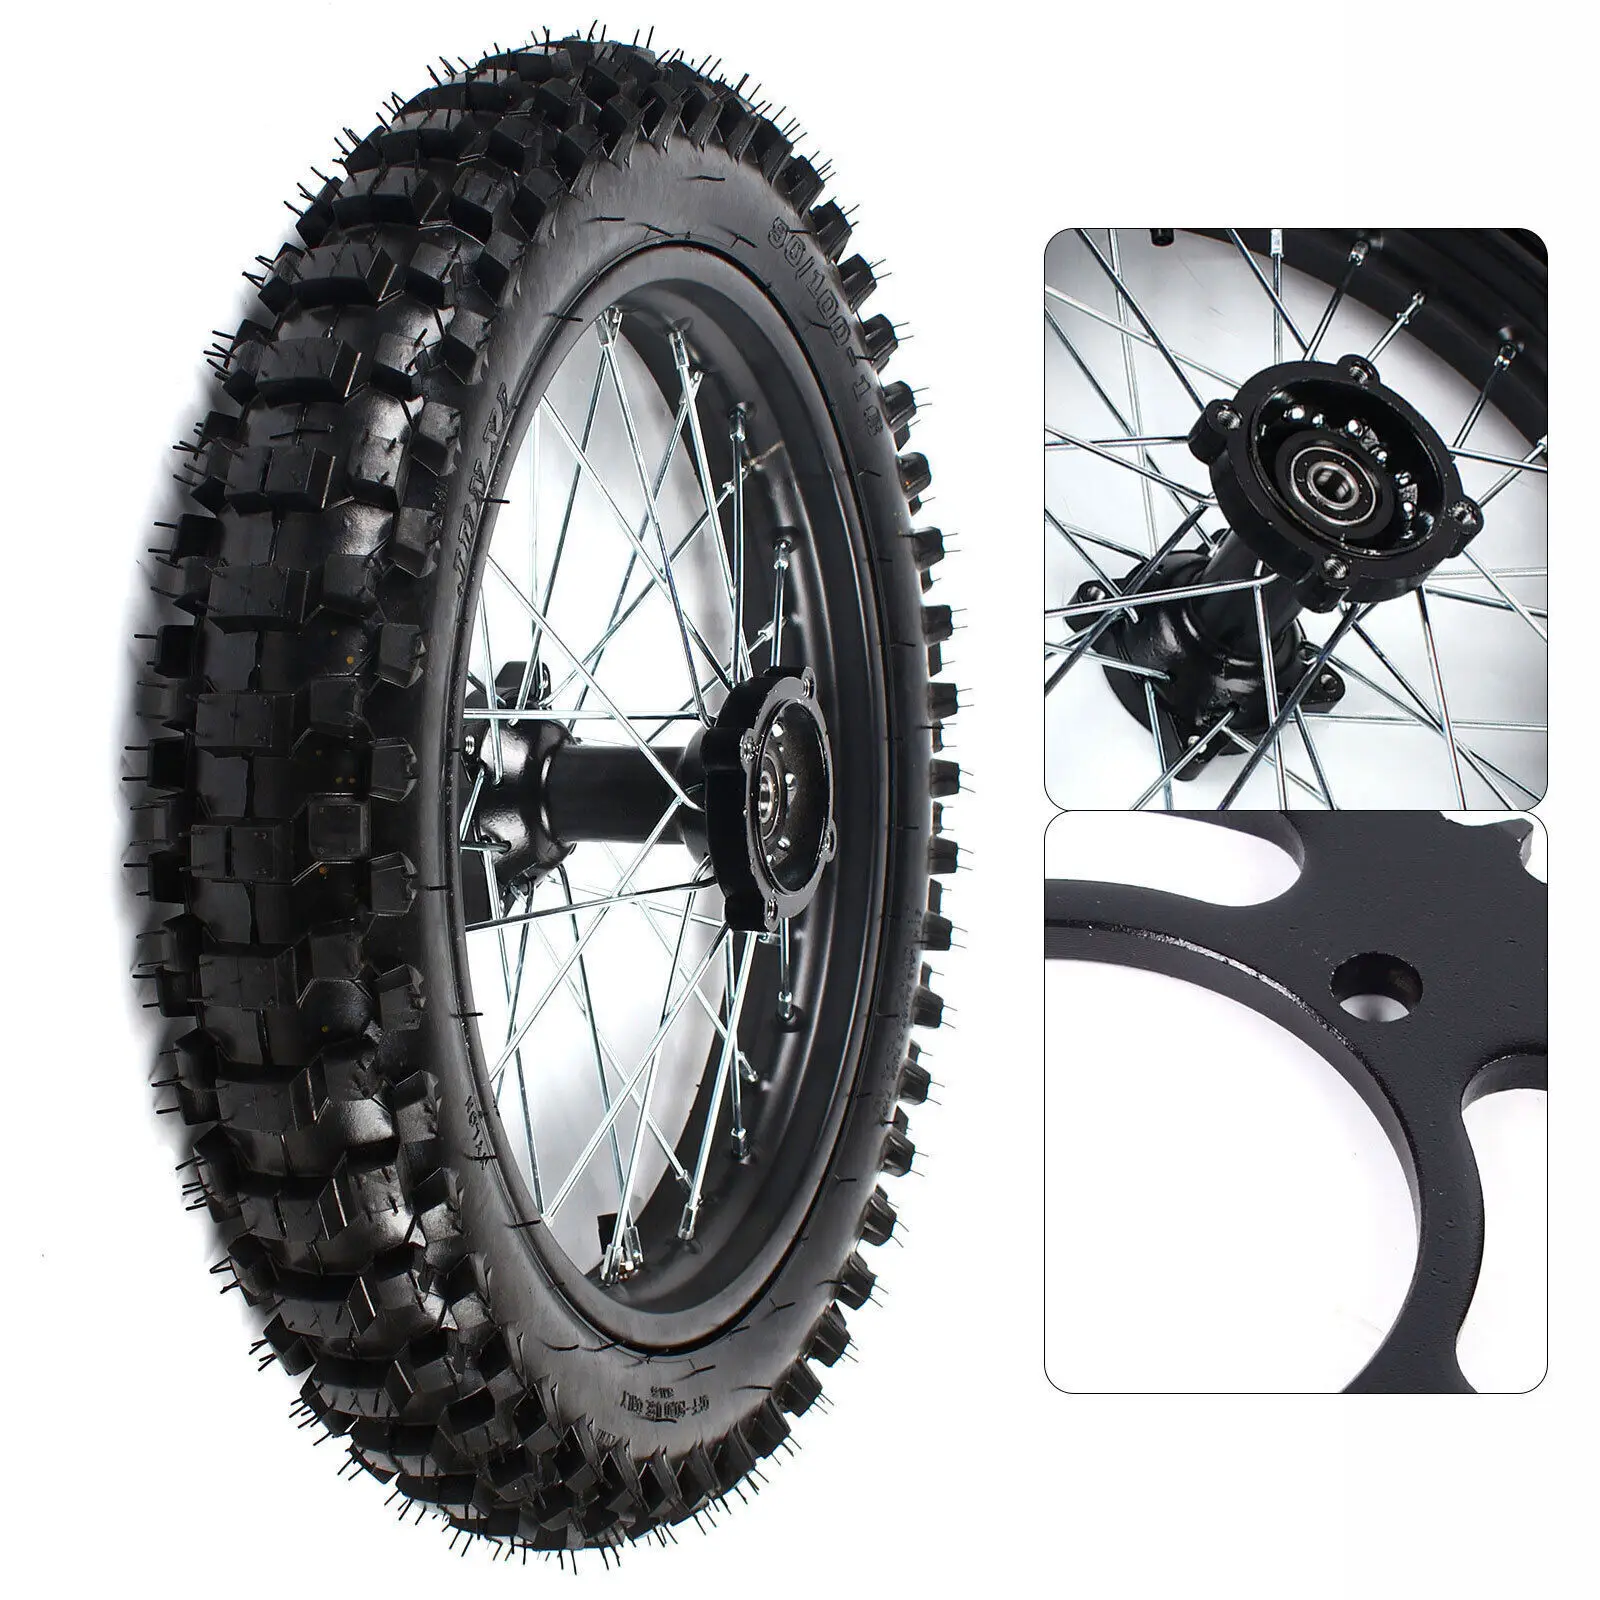 

16 Inch Rear Wheel 90/100-16 Tire Rim+Sprocket For Dirt Bike KX100 CRF150 XR100